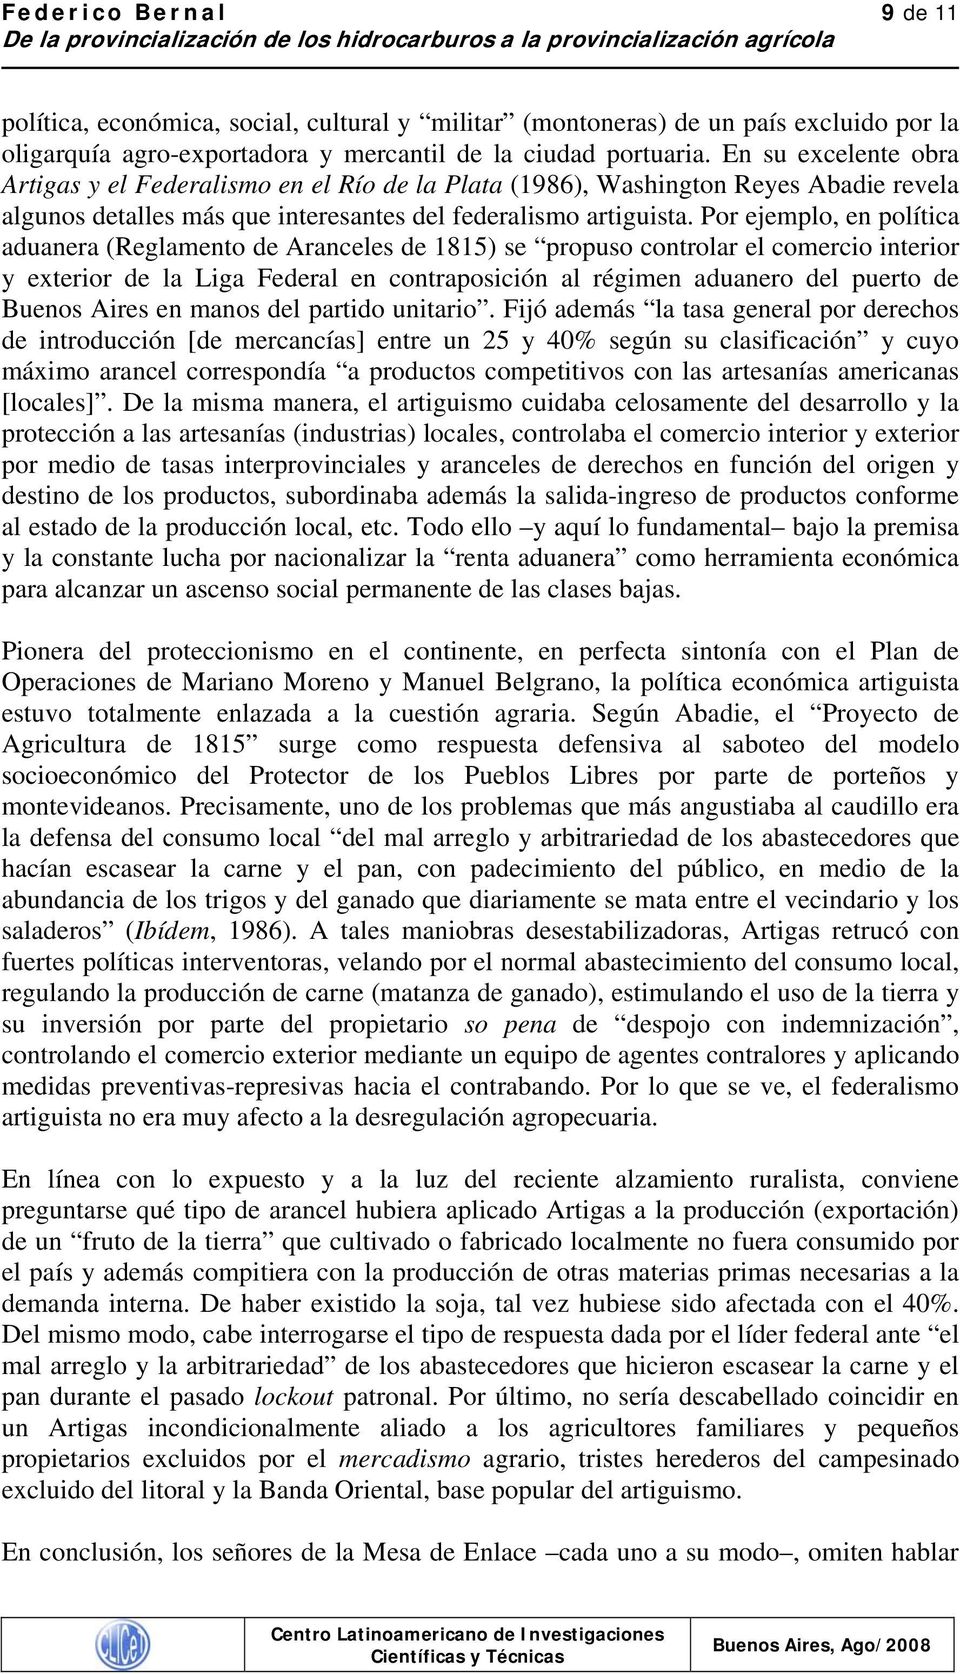 En su excelente bra Artigas y el Federalism en el Rí de la Plata (1986), Washingtn Reyes Abadie revela alguns detalles más que interesantes del federalism artiguista.